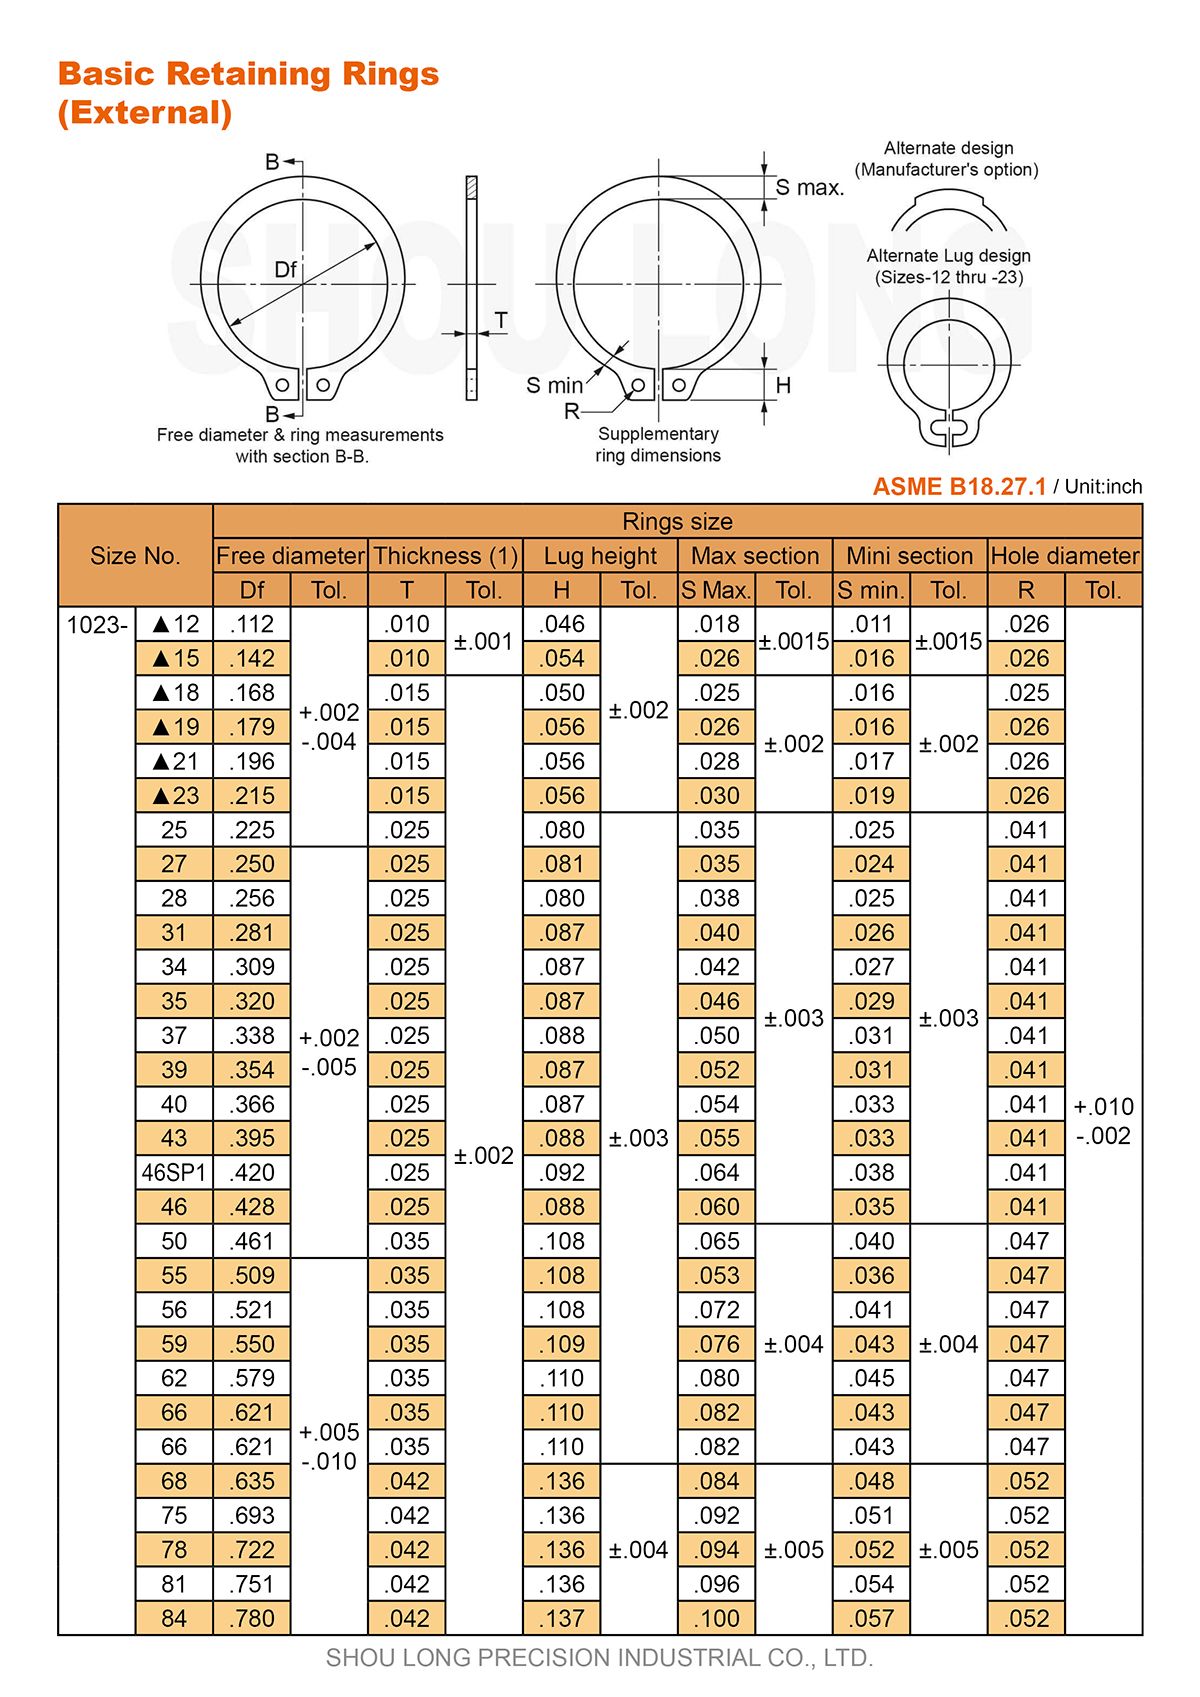 Especificación de anillos de retención básicos en pulgadas para eje ASME/ANSI B18.27.1 -1